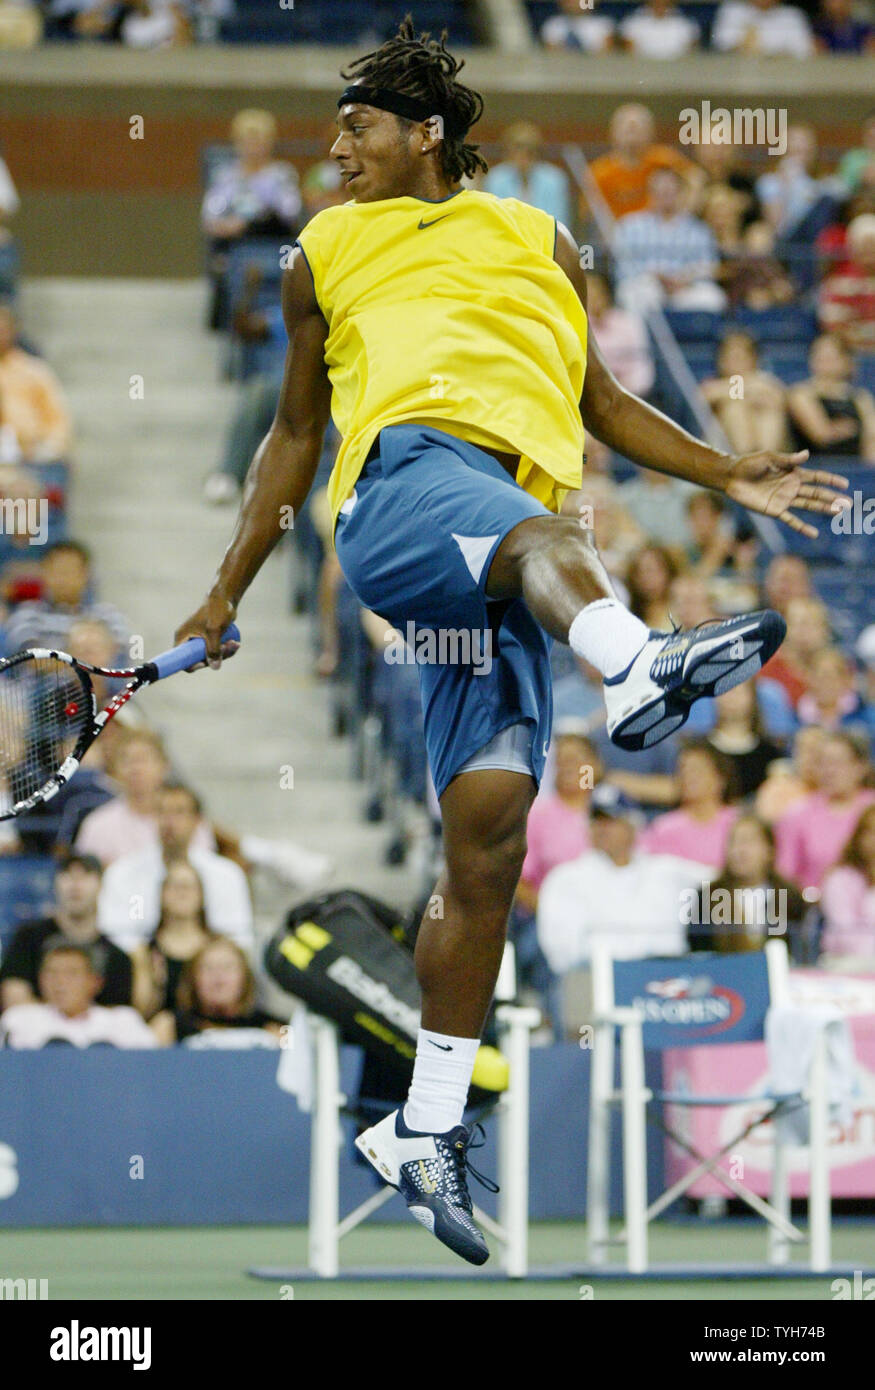 Scoville Jenkins (USA) montres la balle frappée par l'Espagne de Rafael Nadal, qui est classé deuxième, en dehors des limites des terres au cours de la première série de leur match à l'US Open le 31 août 2005 à New York. (Photo d'UPI/Monika Graff) Banque D'Images